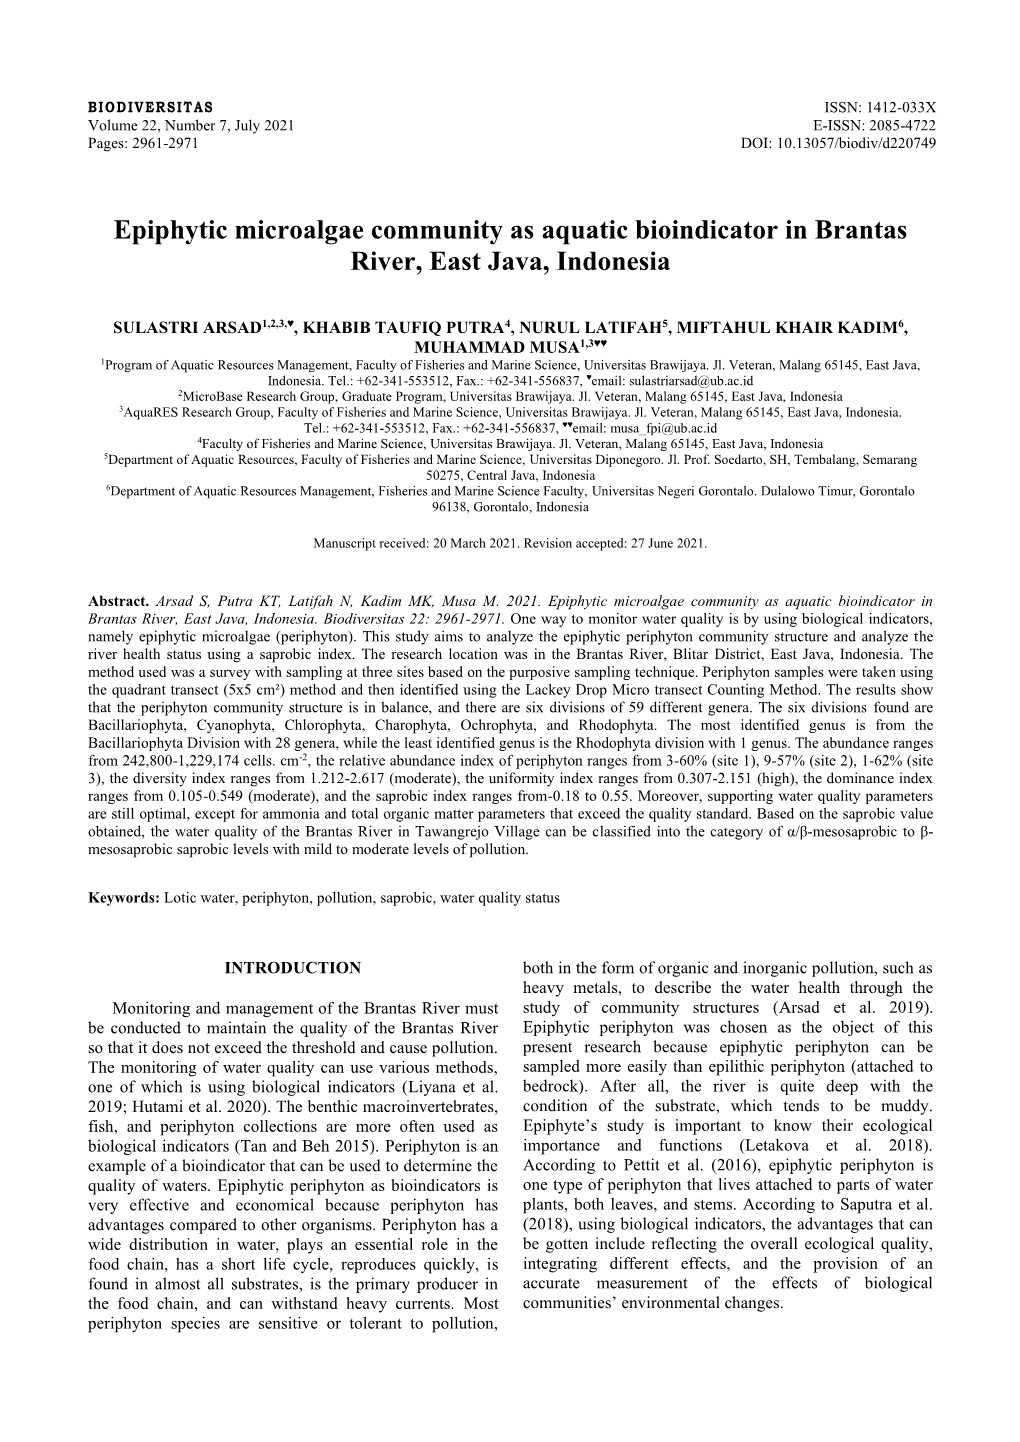 Epiphytic Microalgae Community As Aquatic Bioindicator in Brantas River, East Java, Indonesia